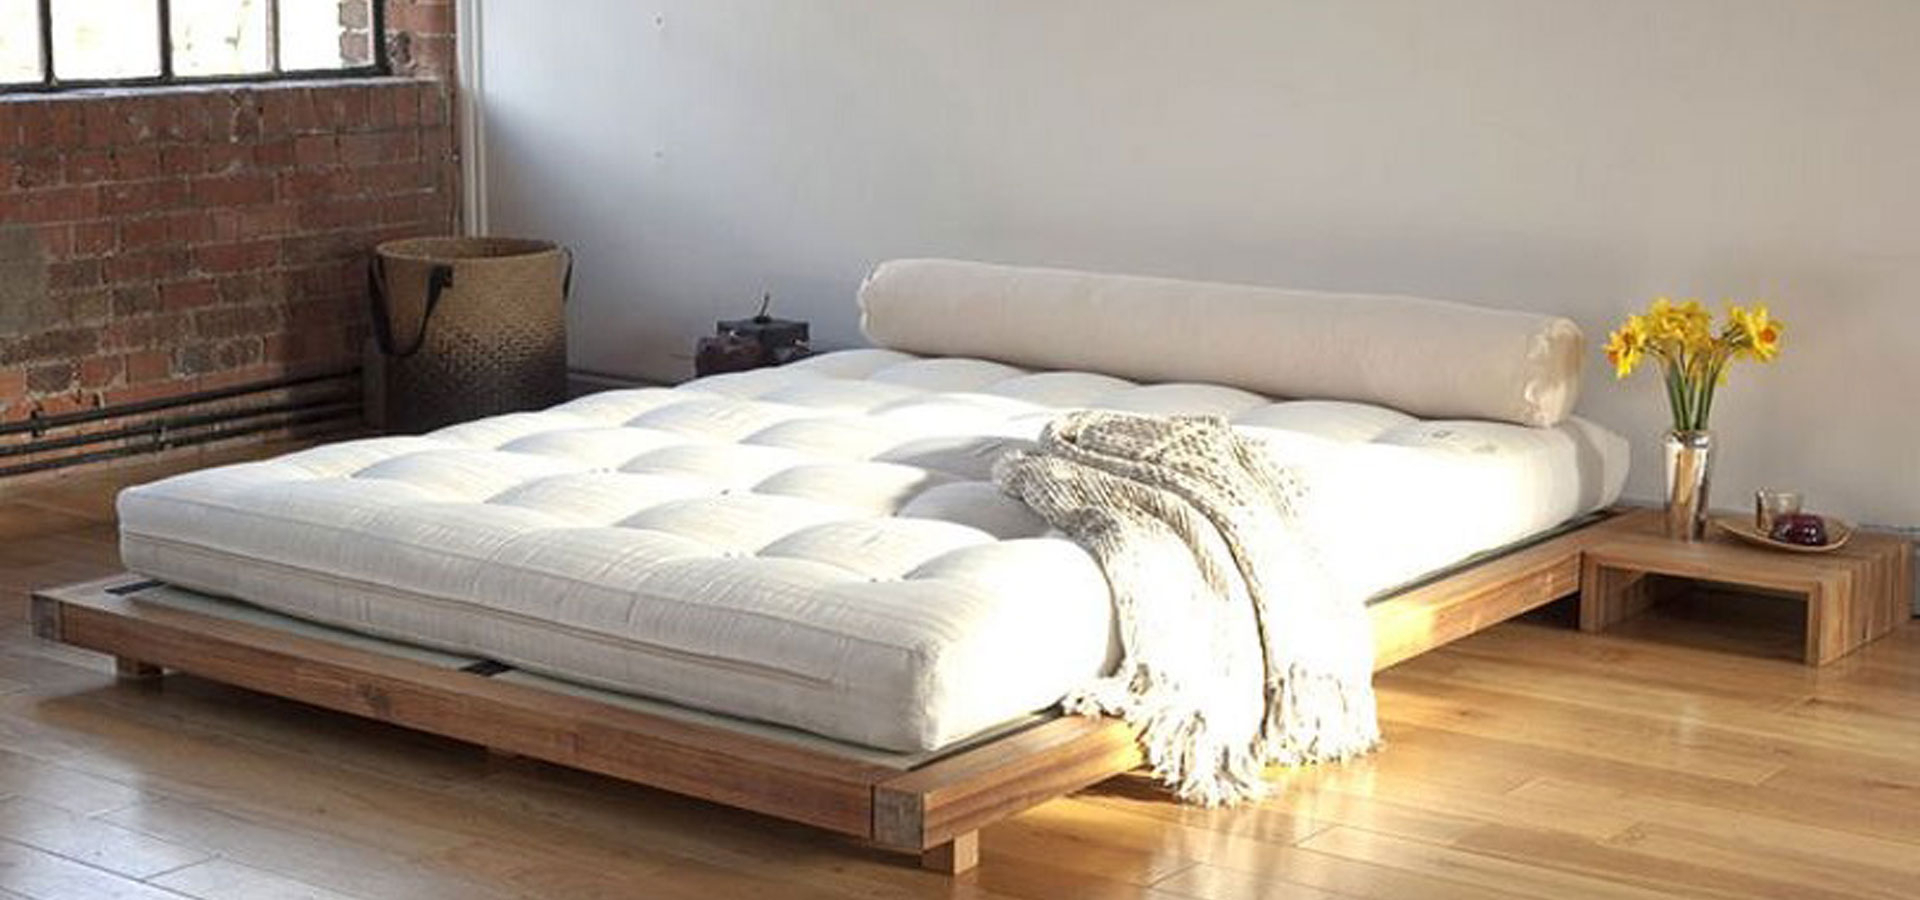 low profile king size mattress